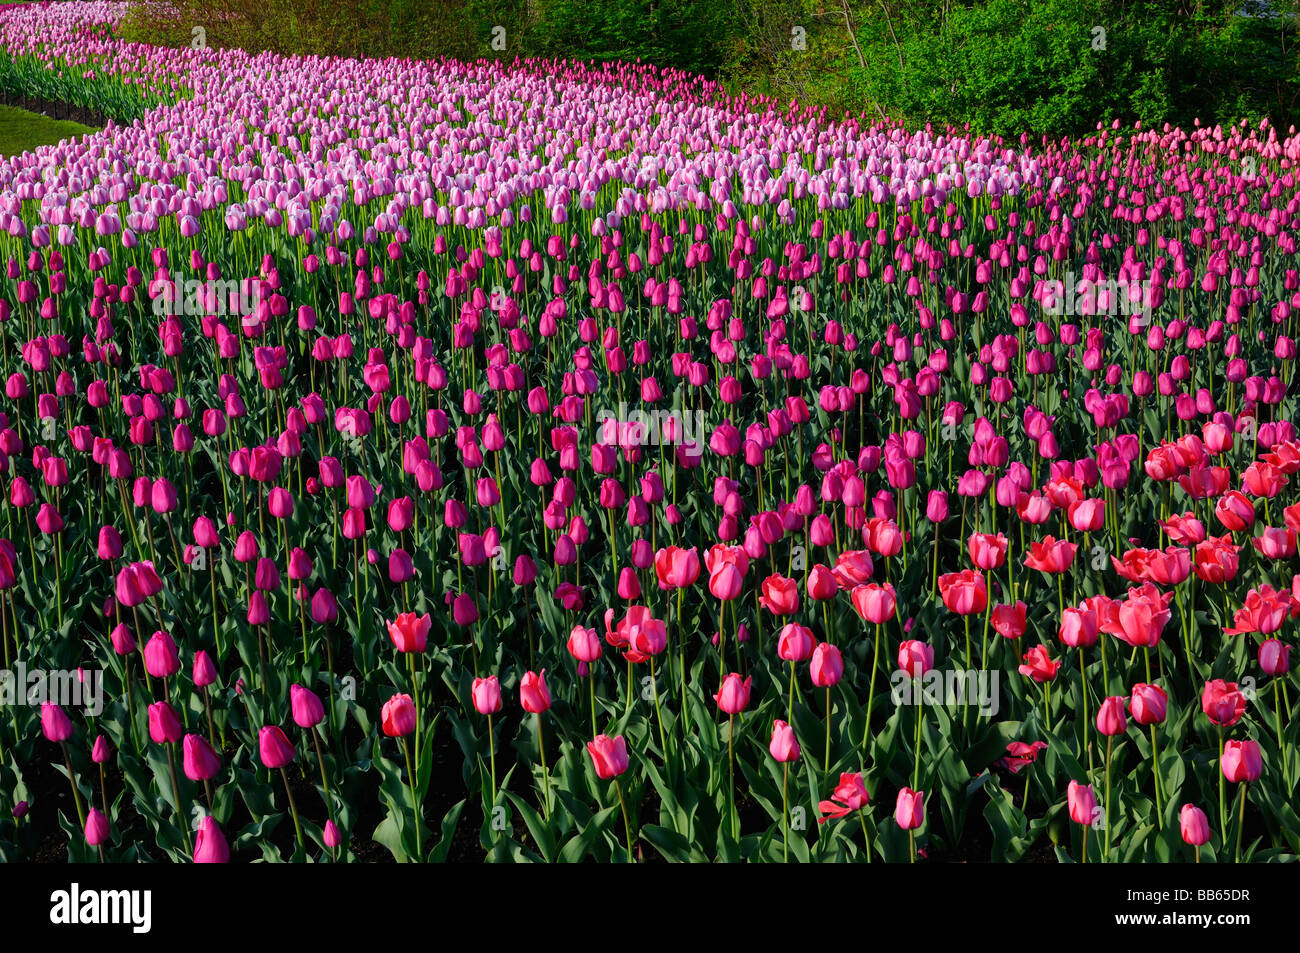 Massa di spazzamento di rosso impressione barcellona e ollioules tulipani in ottawa tulip festival giardino Foto Stock